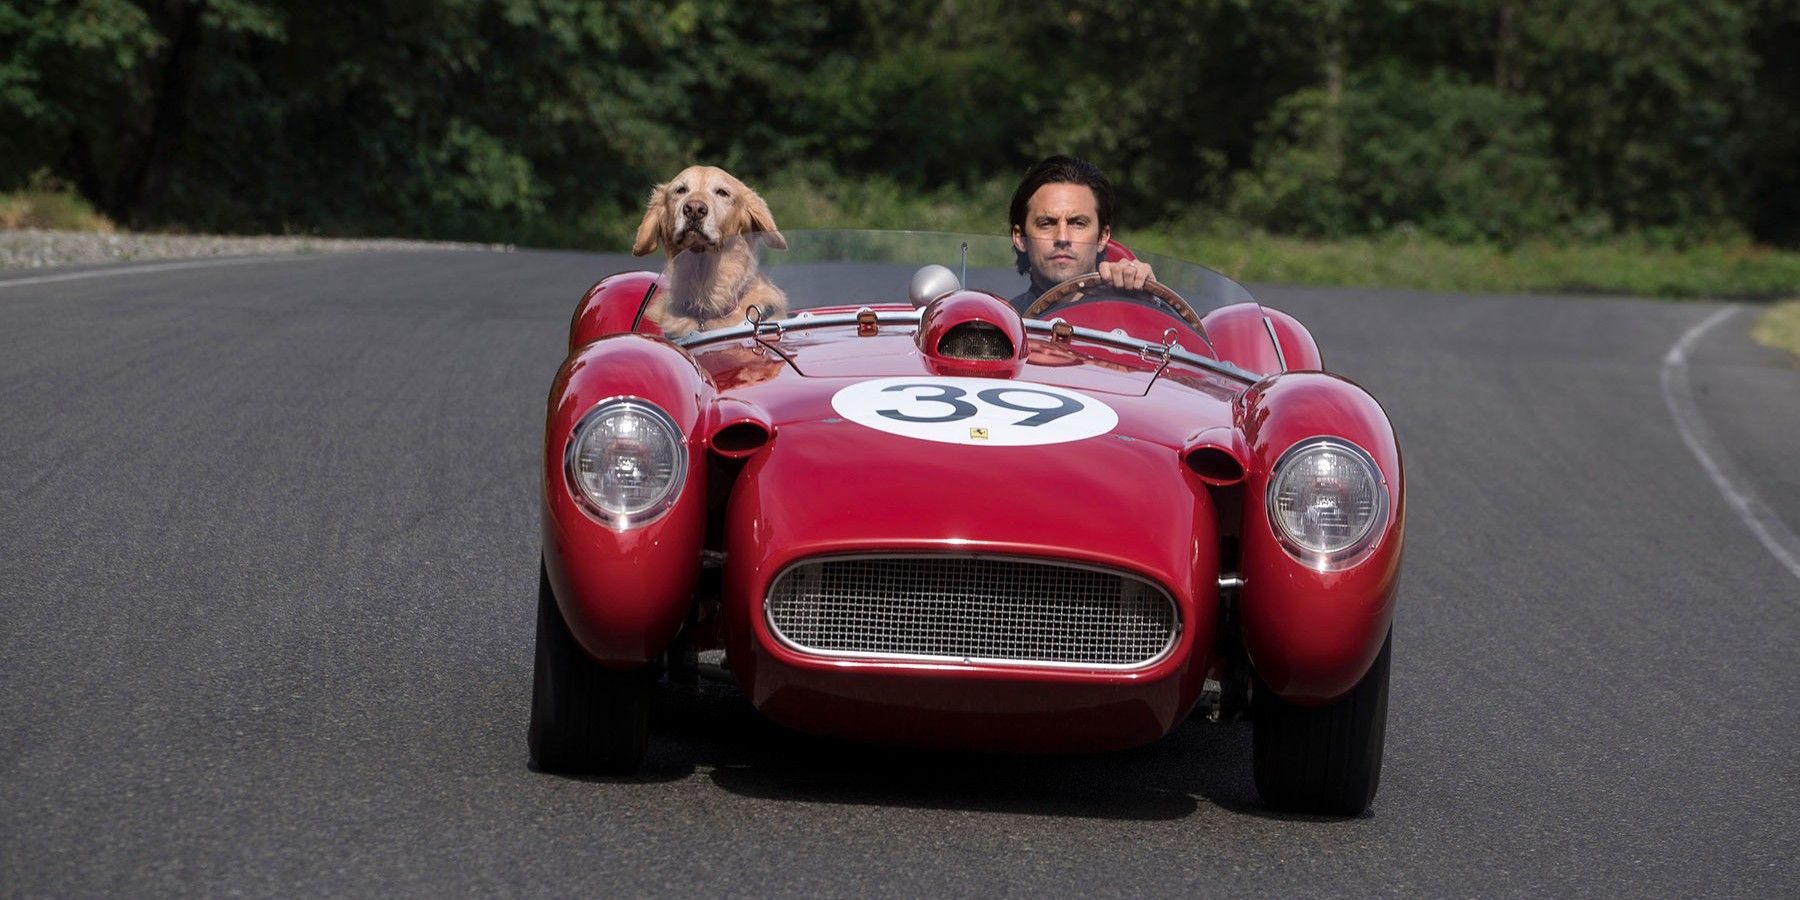 Milo Ventimiglia in The Art of Racing in the Rain